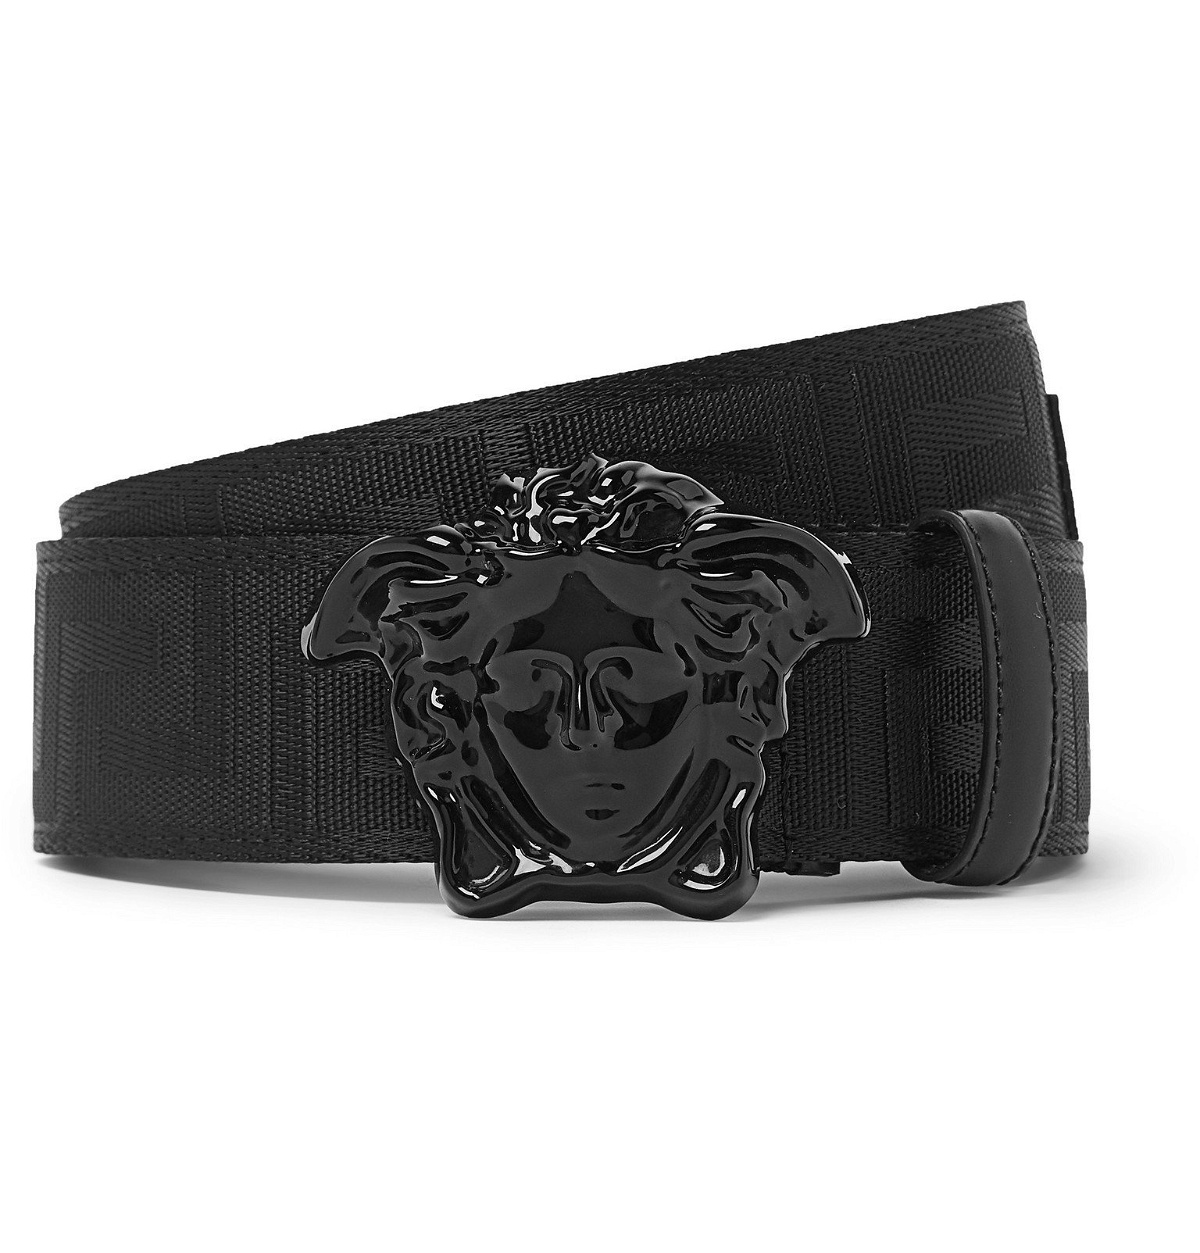 Gucci 4cm Leather-trimmed logo-jacquard Belt - Men - Black Belts